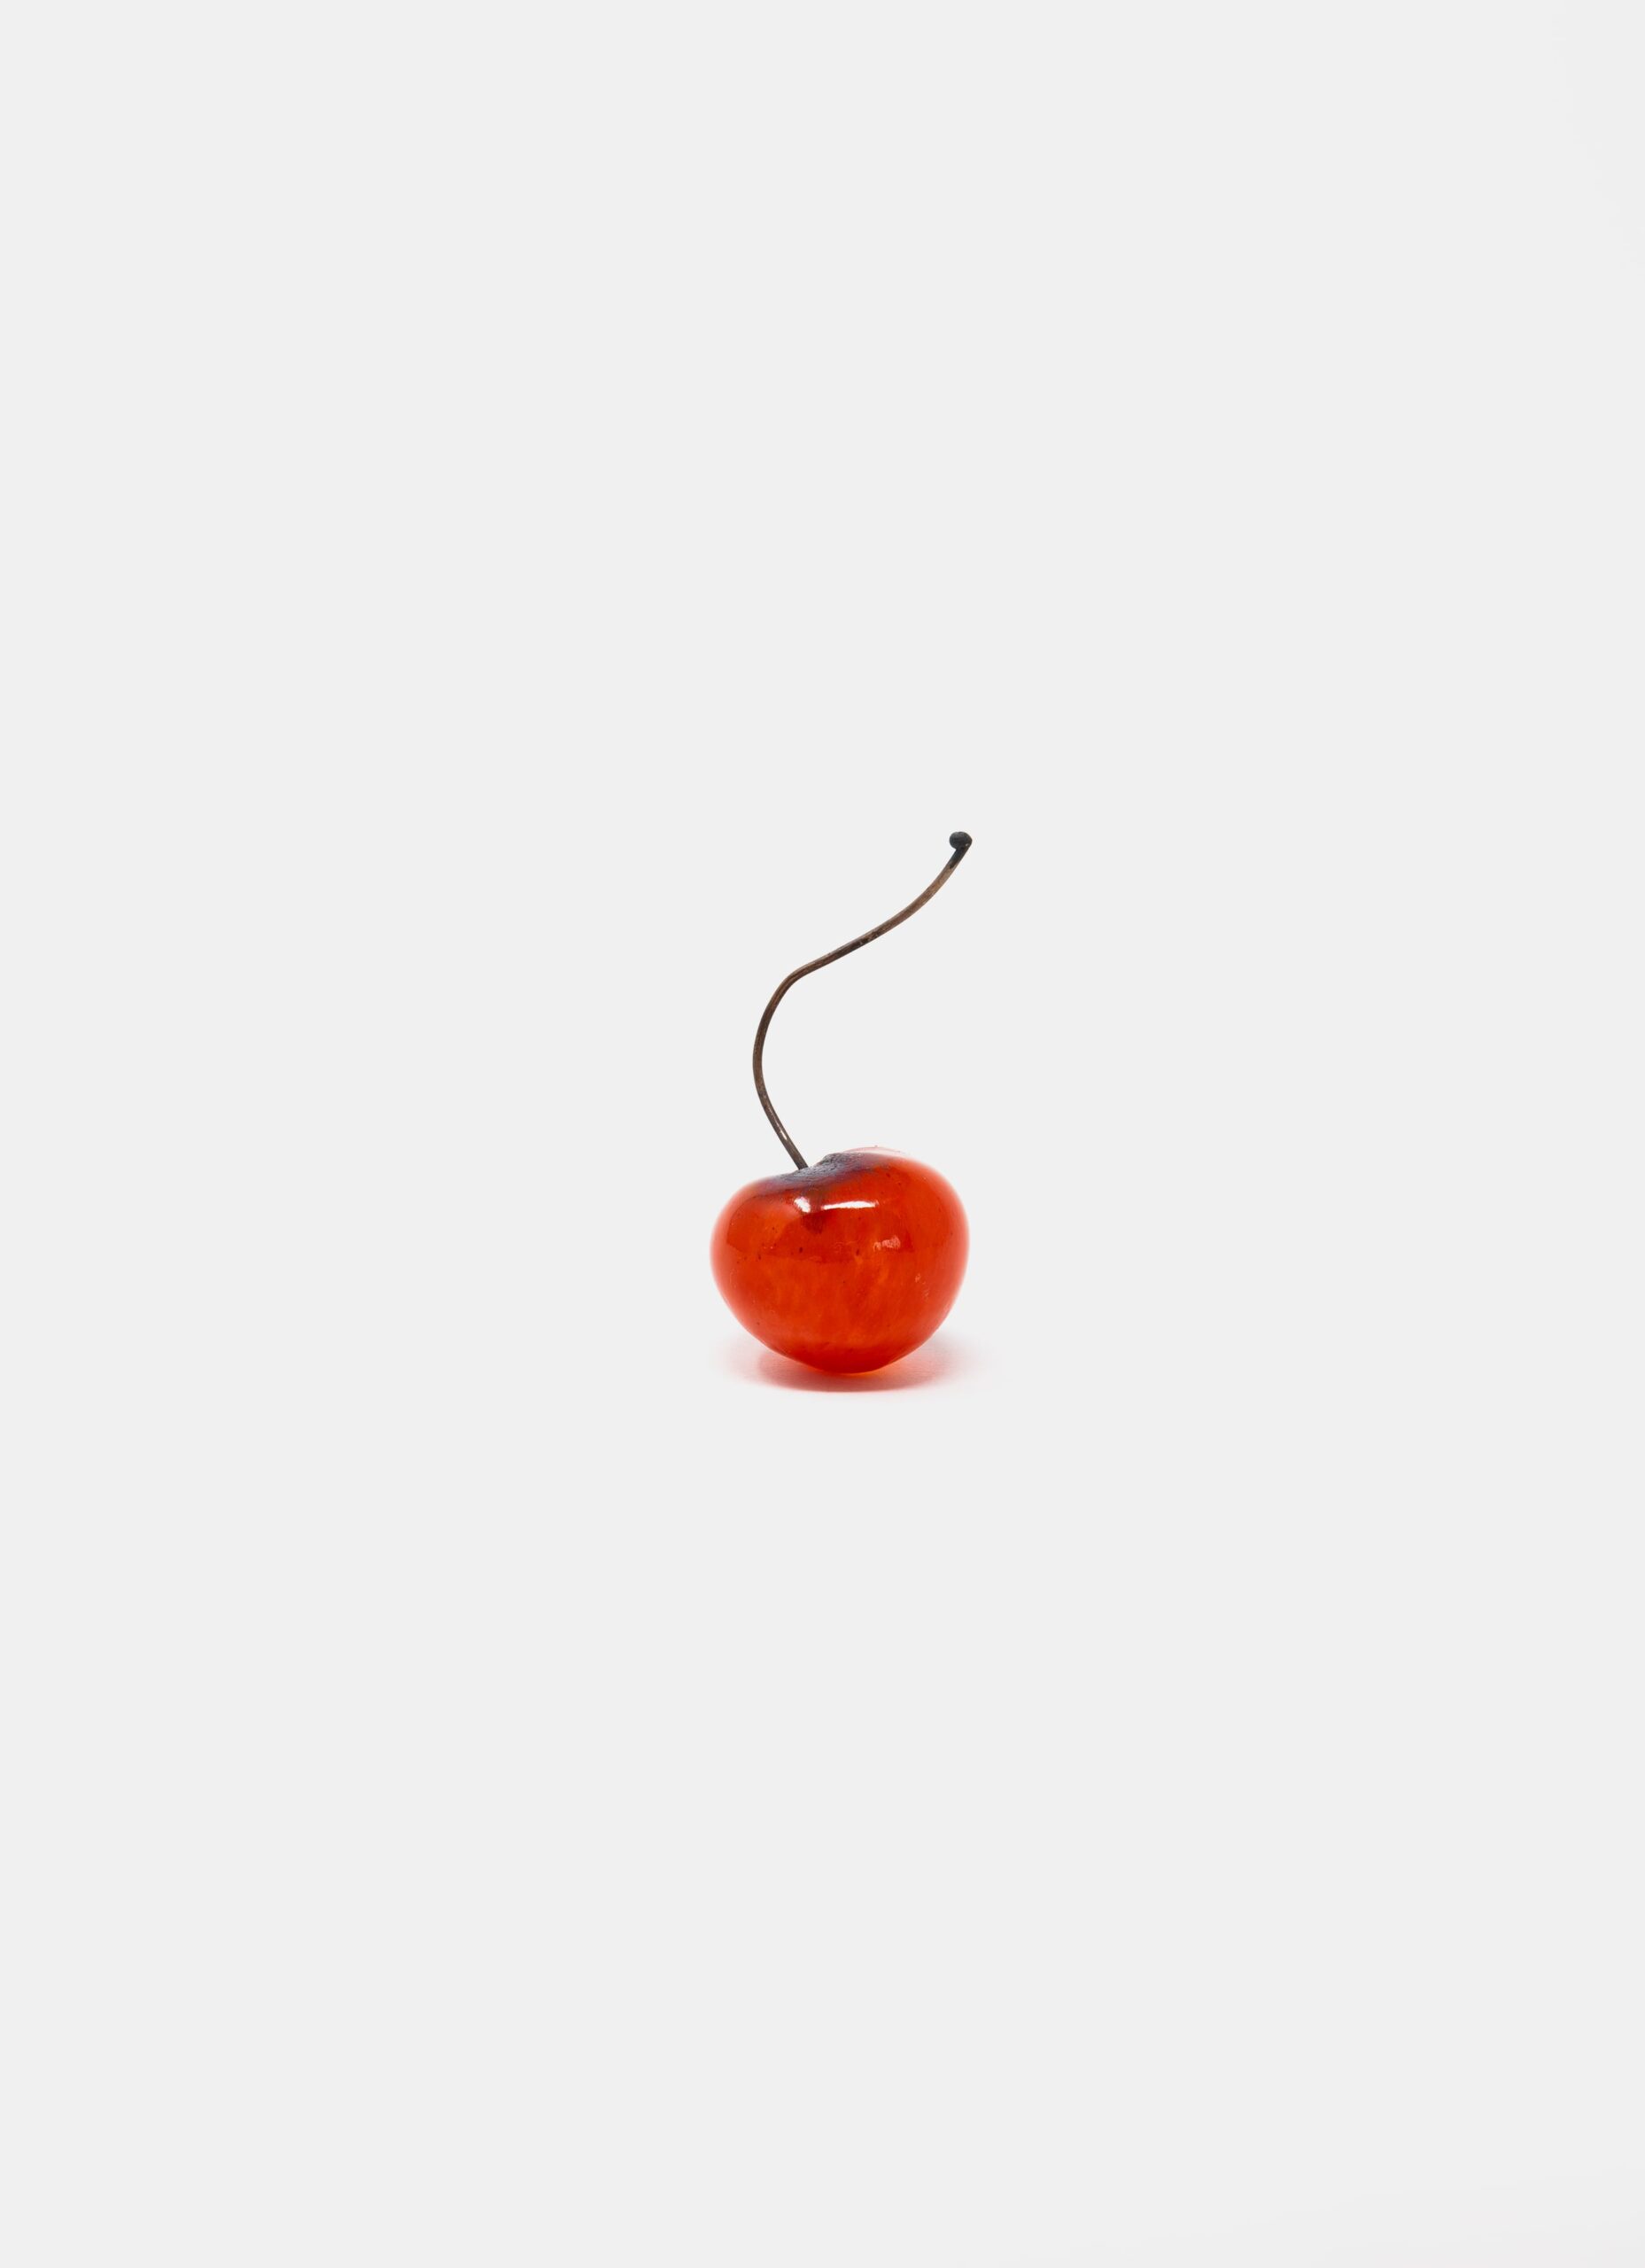 Gunilla Kihlgren - Handblown glass - Cherry - red